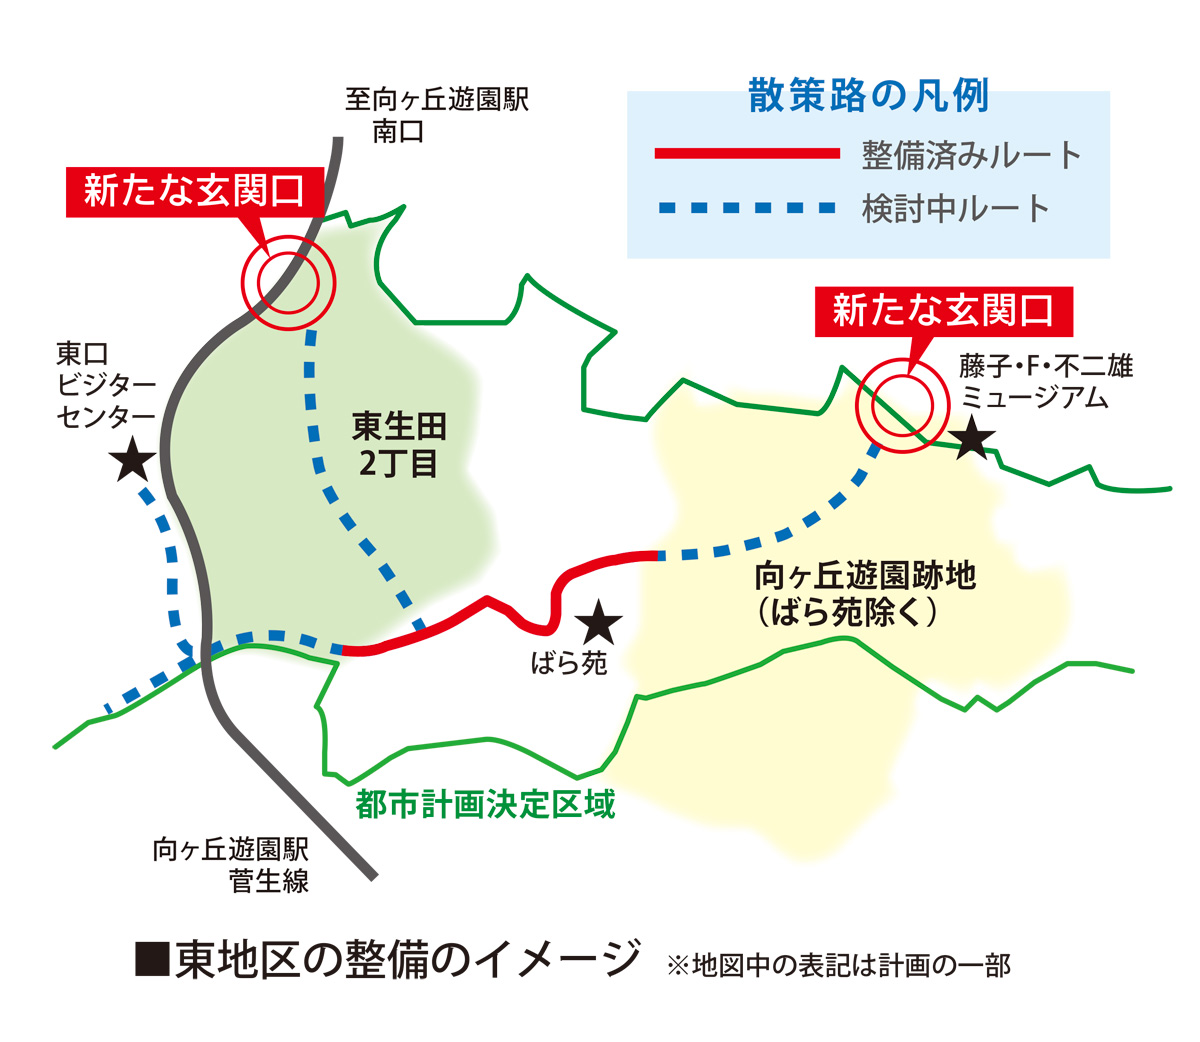 生田緑地整備方針 東地区に新たな玄関口 回遊路つなぎ 資源活用へ 多摩区 タウンニュース